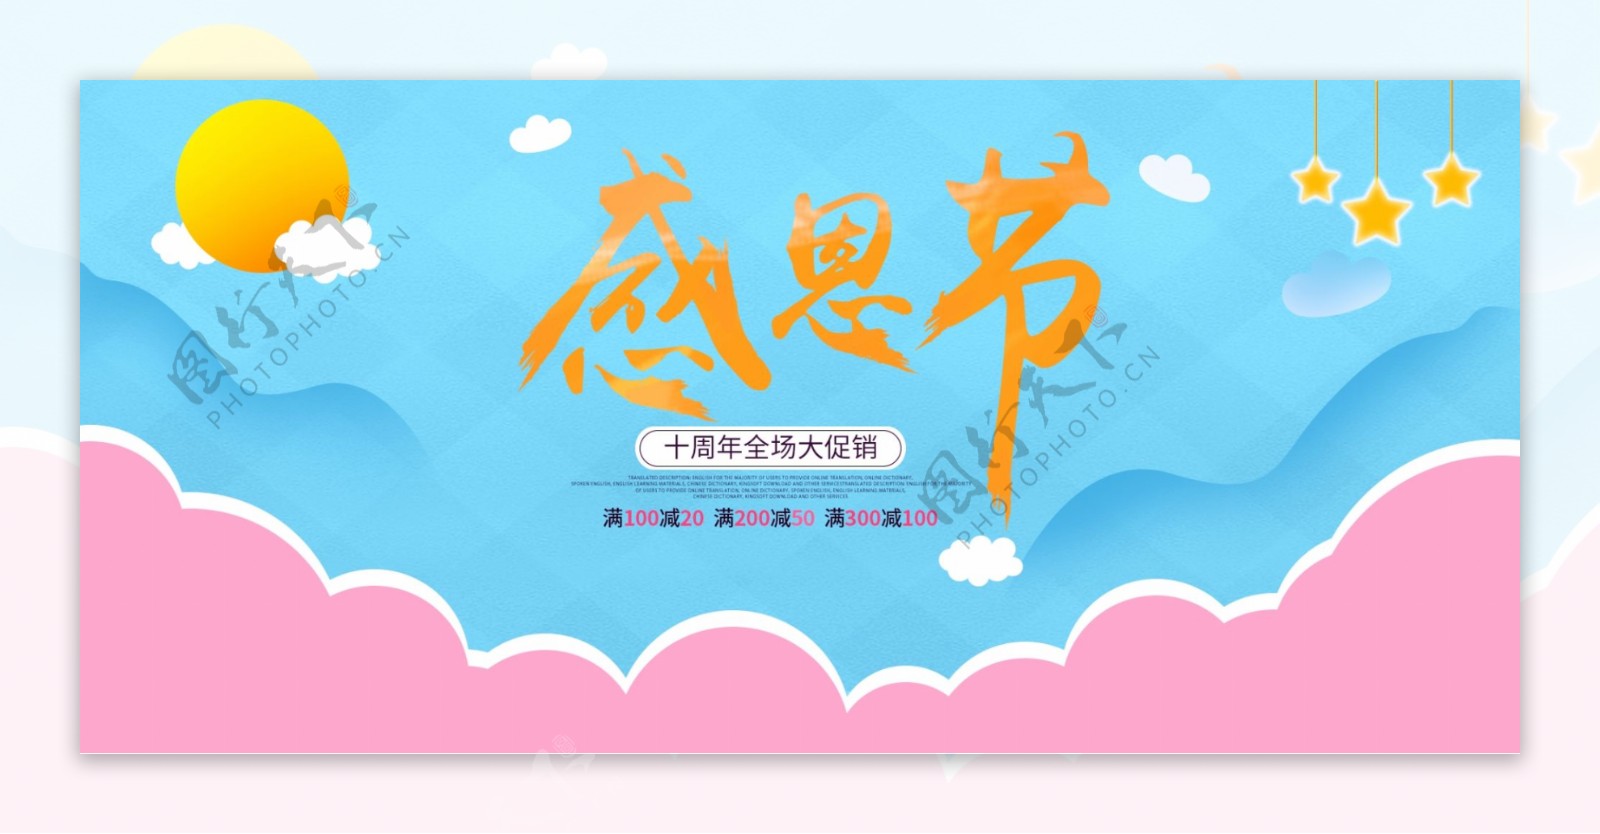 卡通可爱蓝色粉色云朵感恩节原创插画banner